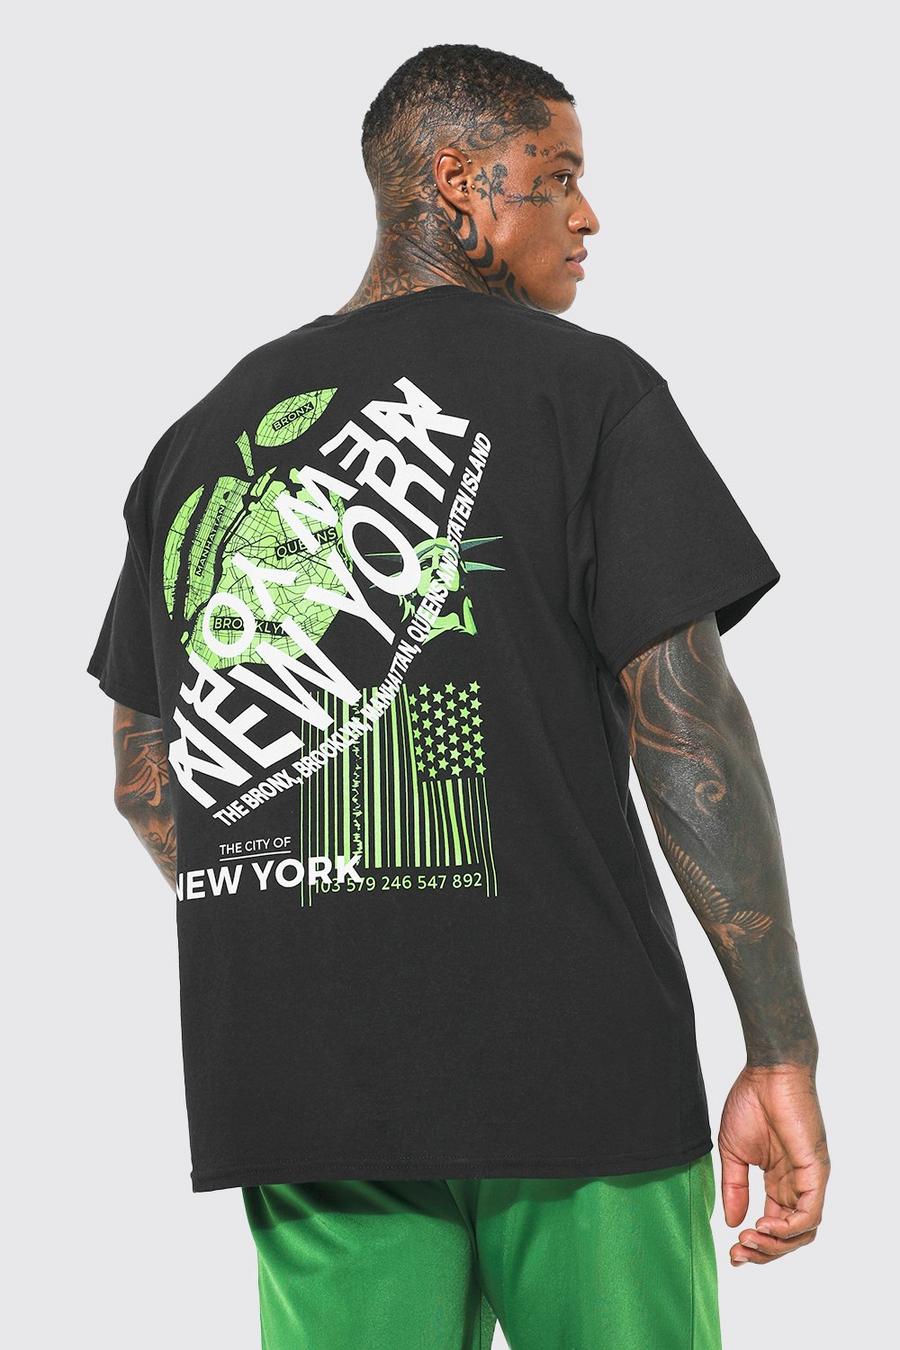 New York City / T-Shirt Print  Printed shirts, Tshirt print, Mens tshirts